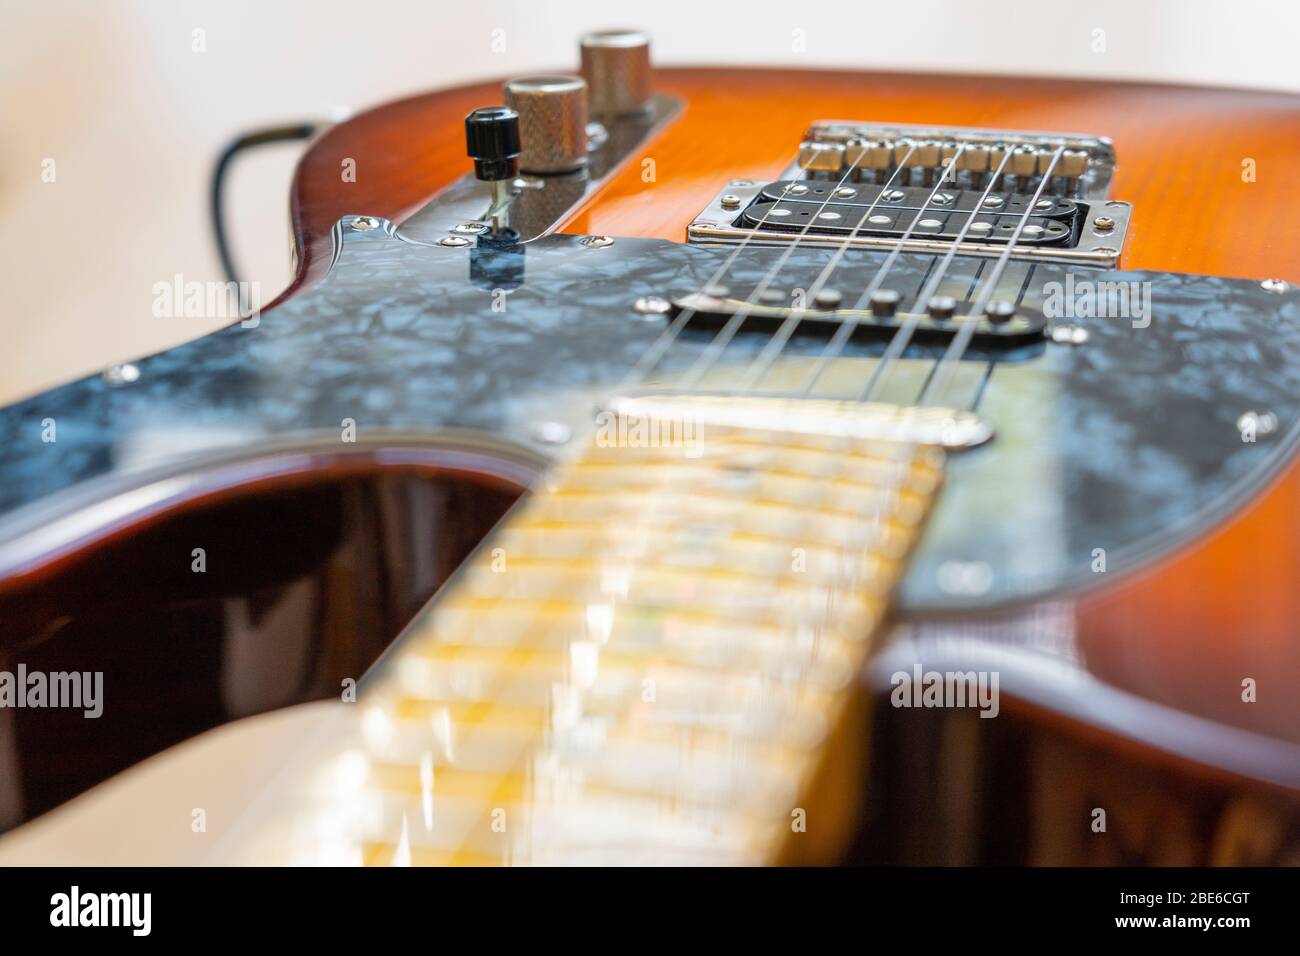 Un Fender Jugador moderno Telecaster guitarra eléctrica con un acabado de explosión de miel, cuerpo de pino, cuello de arce, con bobinas individuales y pepinillos humbucker Foto de stock